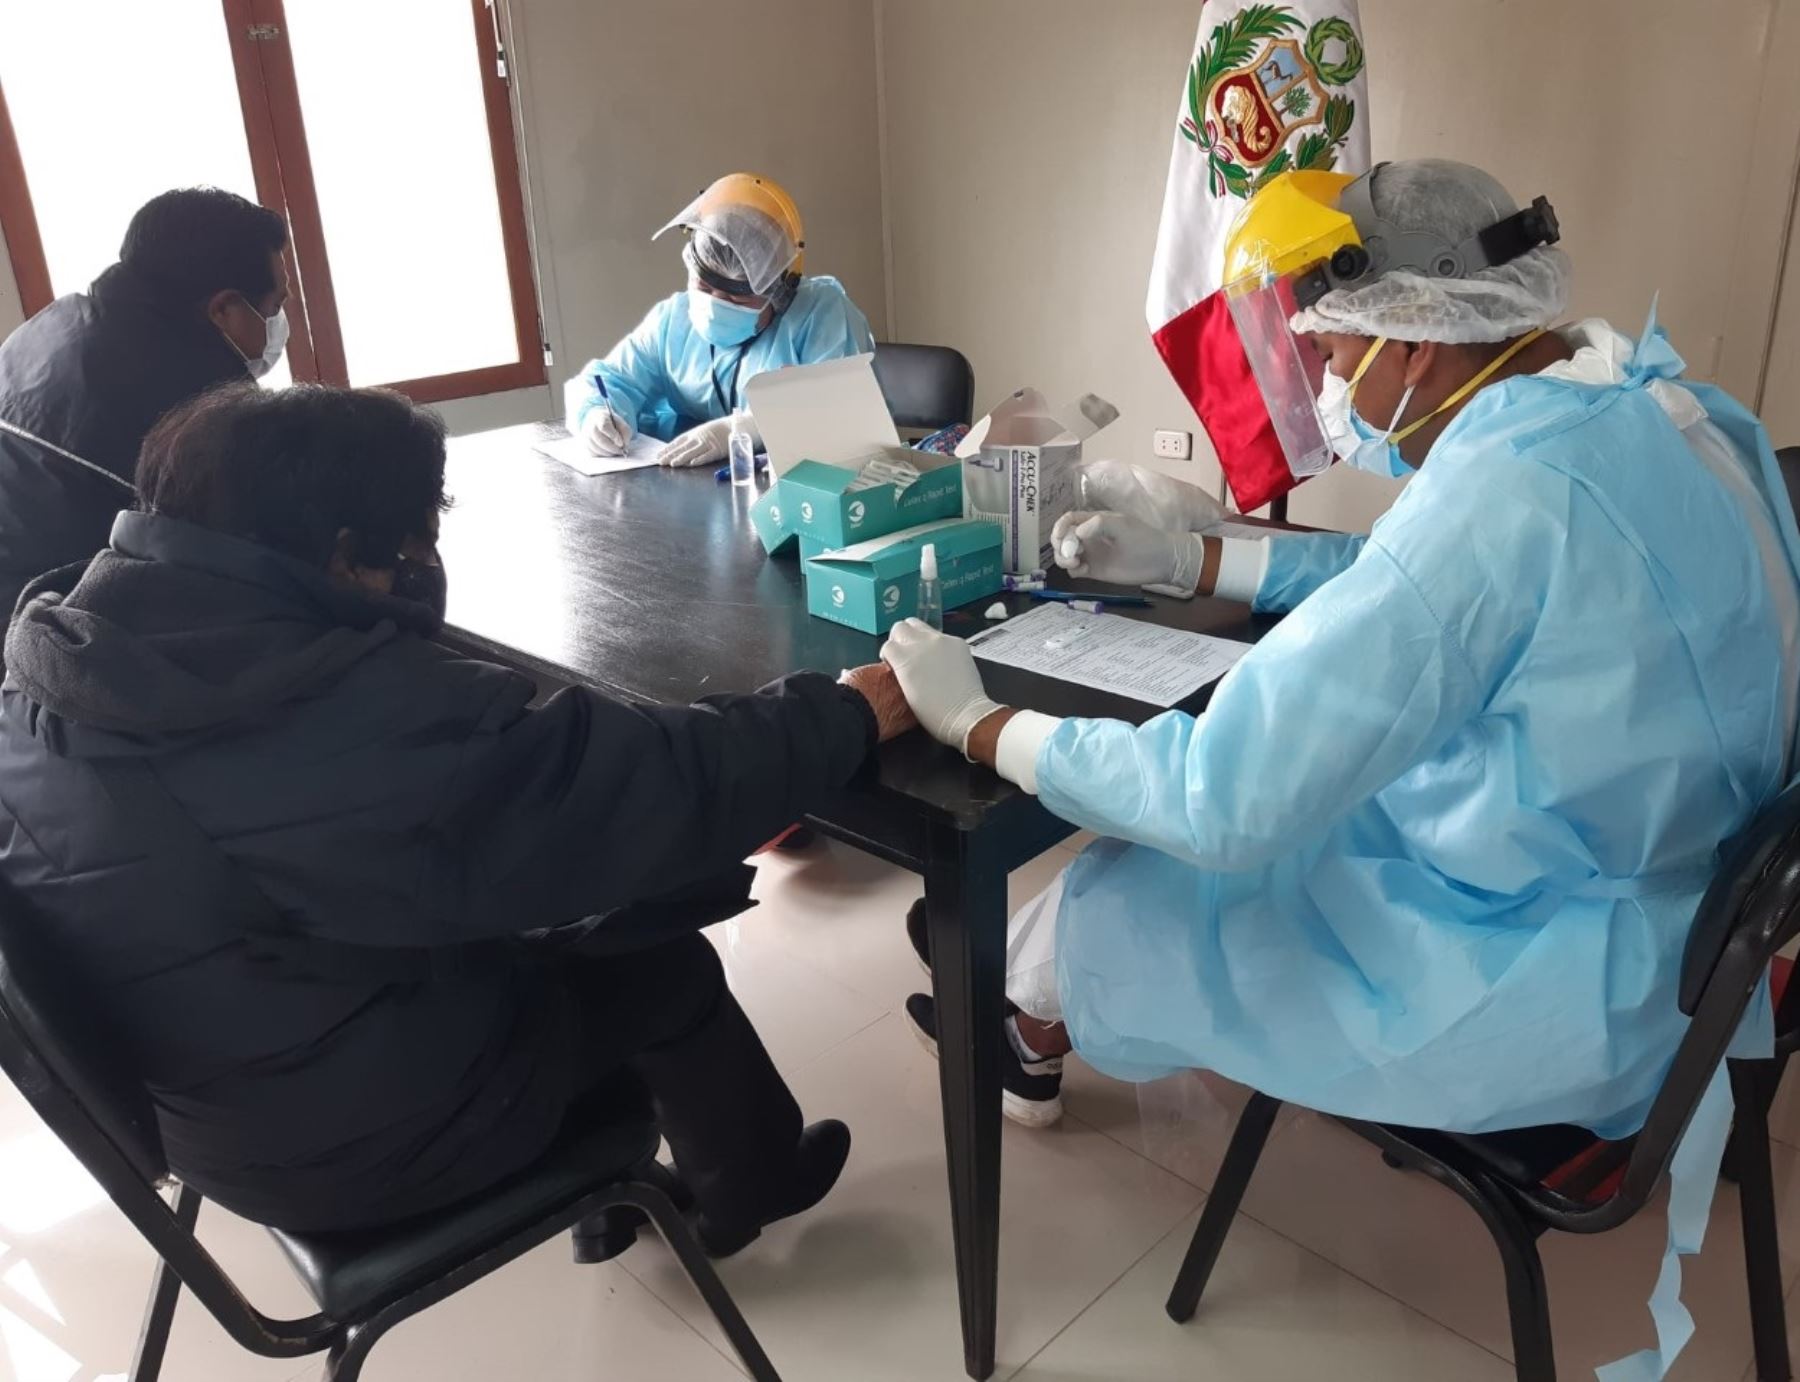 El Gobierno Regional de Áncash suspendió las labores en su sede central de Huaraz al reportarse nuevos casos de coronavirus (covid-19) en dicha oficina. ANDINA/Difusión